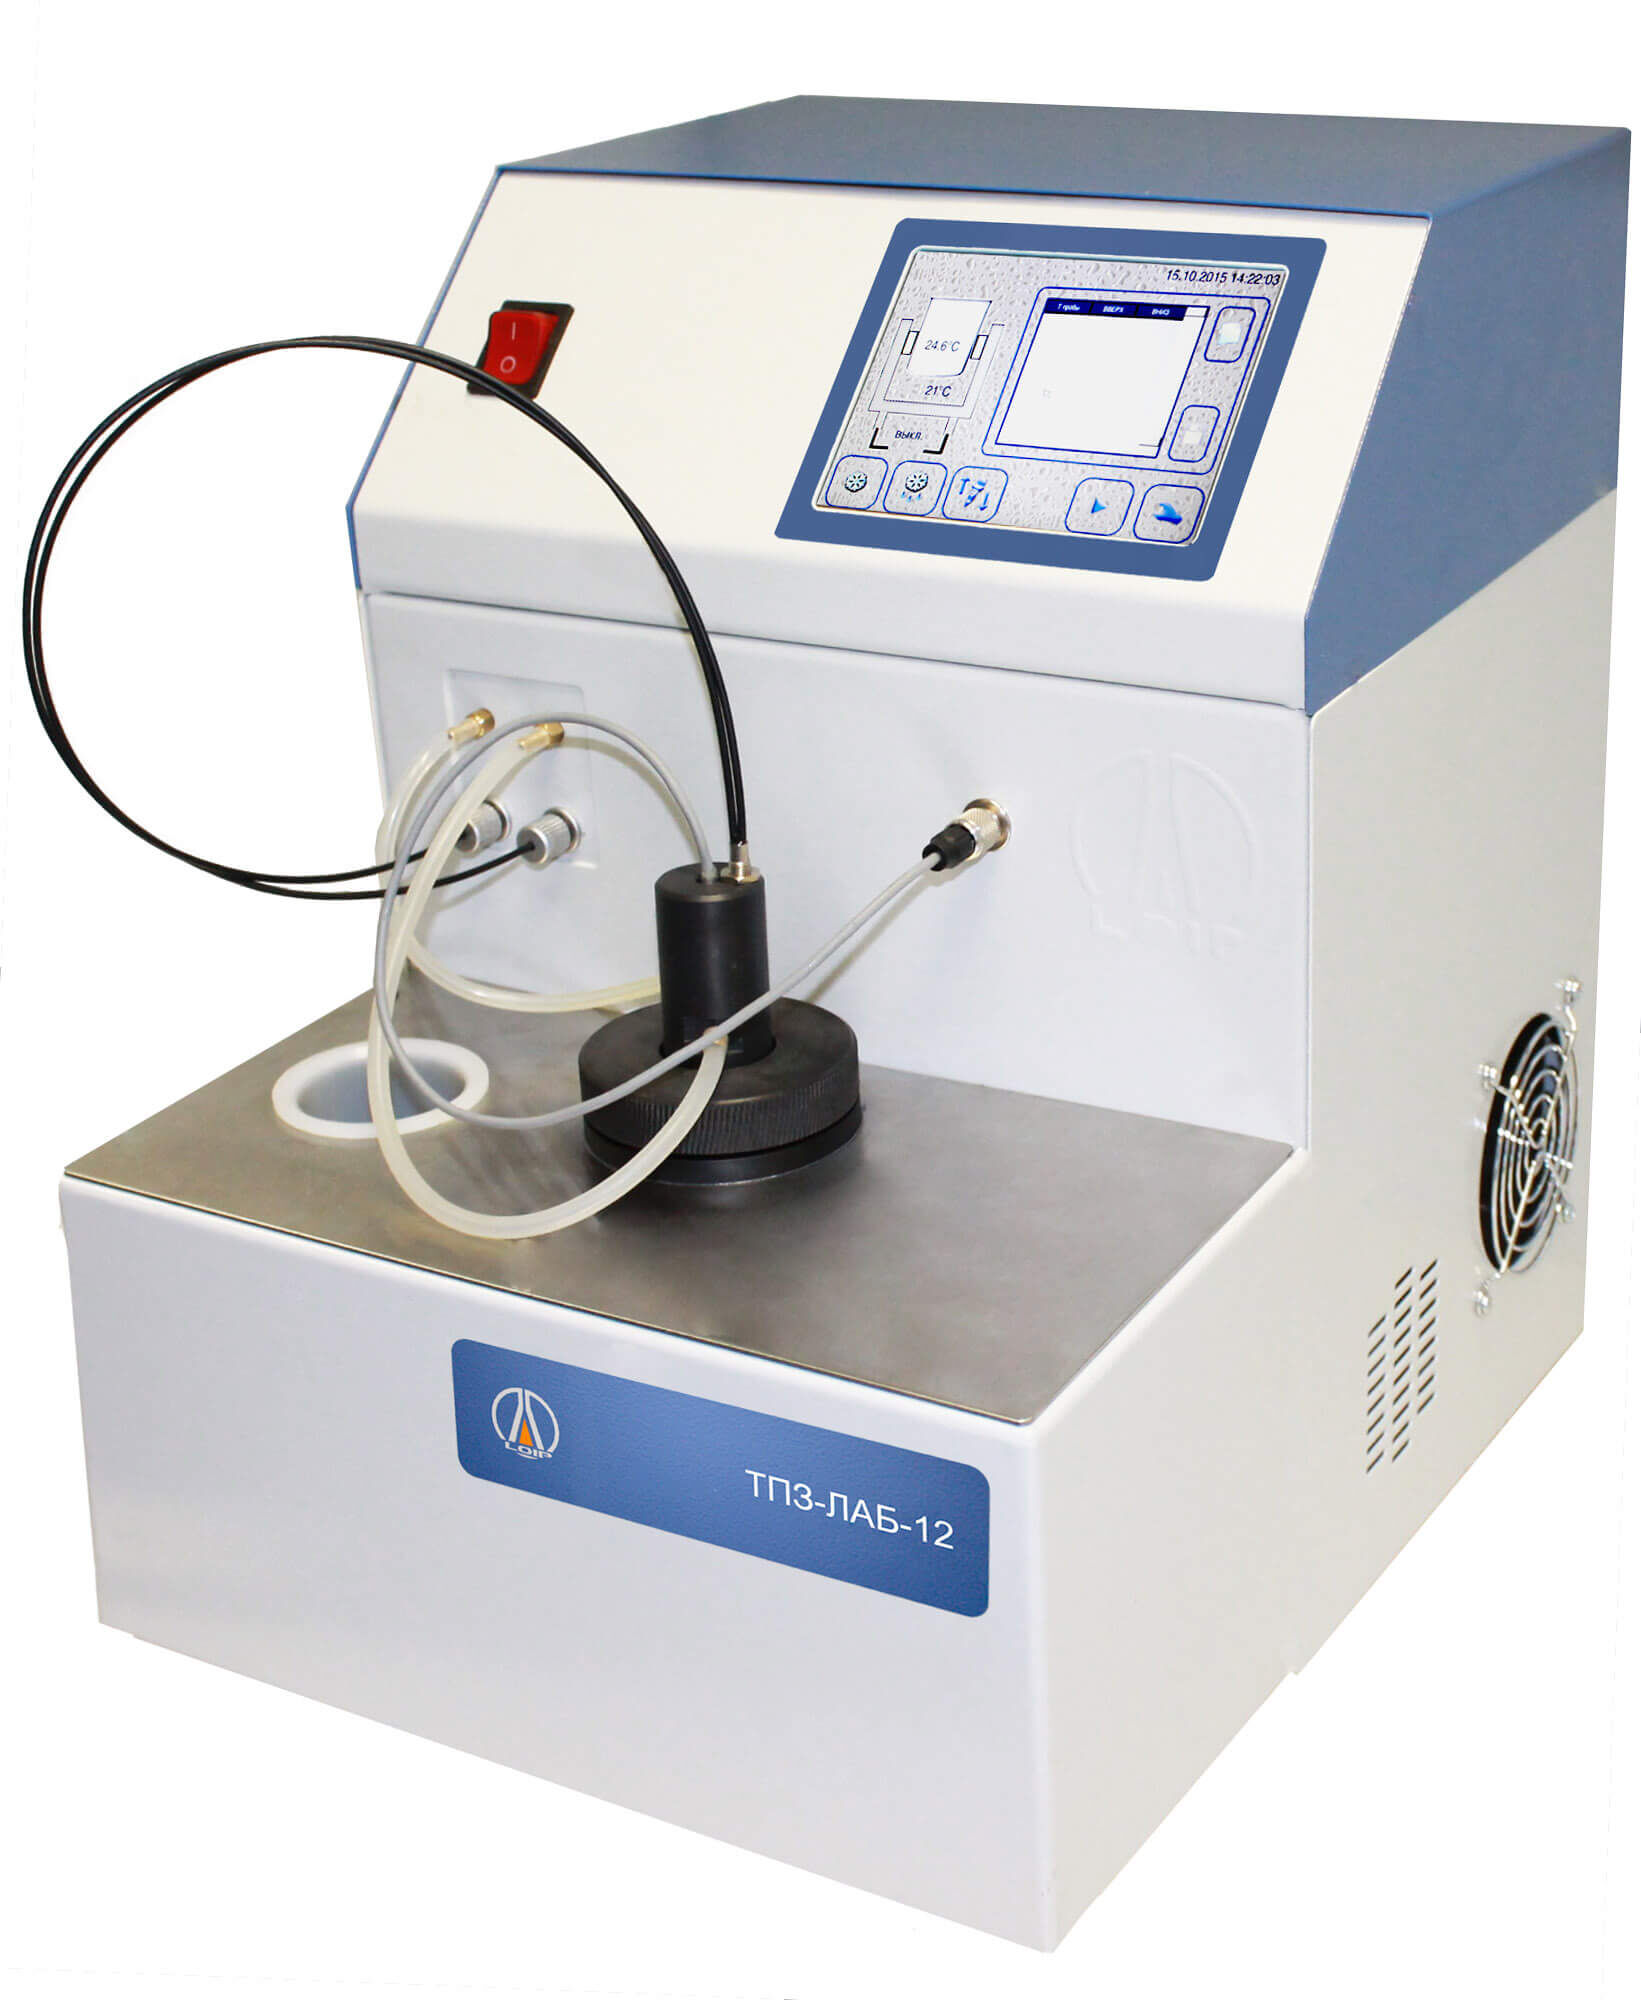 Аппарат LOIP ТПЗ-ЛАБ-12 для определения температуры помутнения и застывания нефтепродуктов